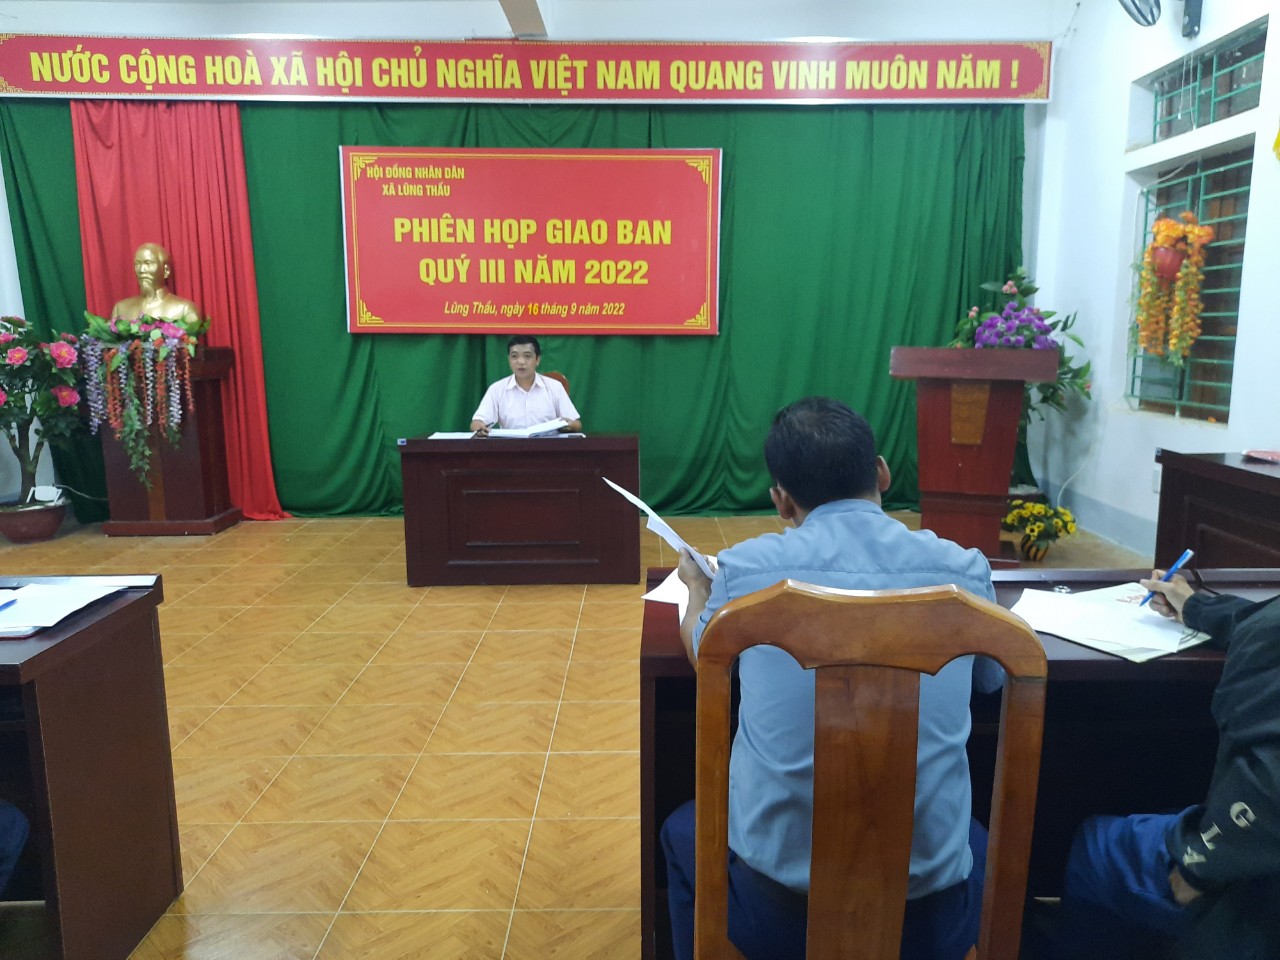 Hội đồng nhân dân xã Lũng Thầu tổ chức giao ban quý III năm 2022